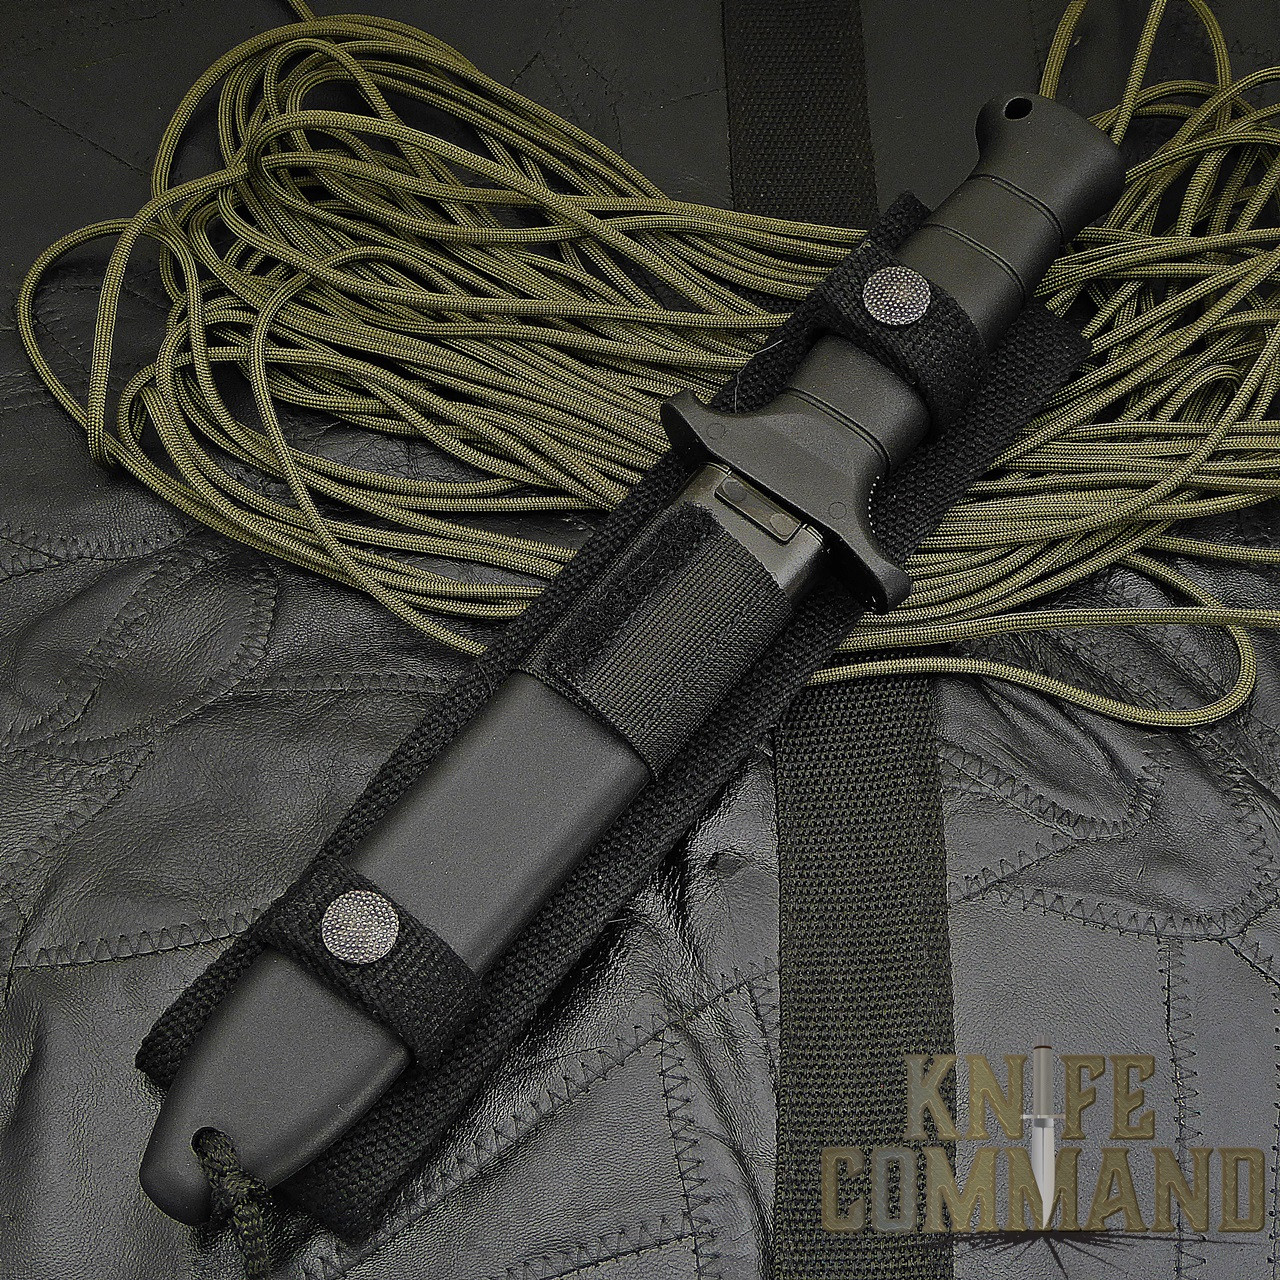 Eickhorn Solingen KM 2000 Combat Knife Kampfmesser KM2000 - KnifeCommand